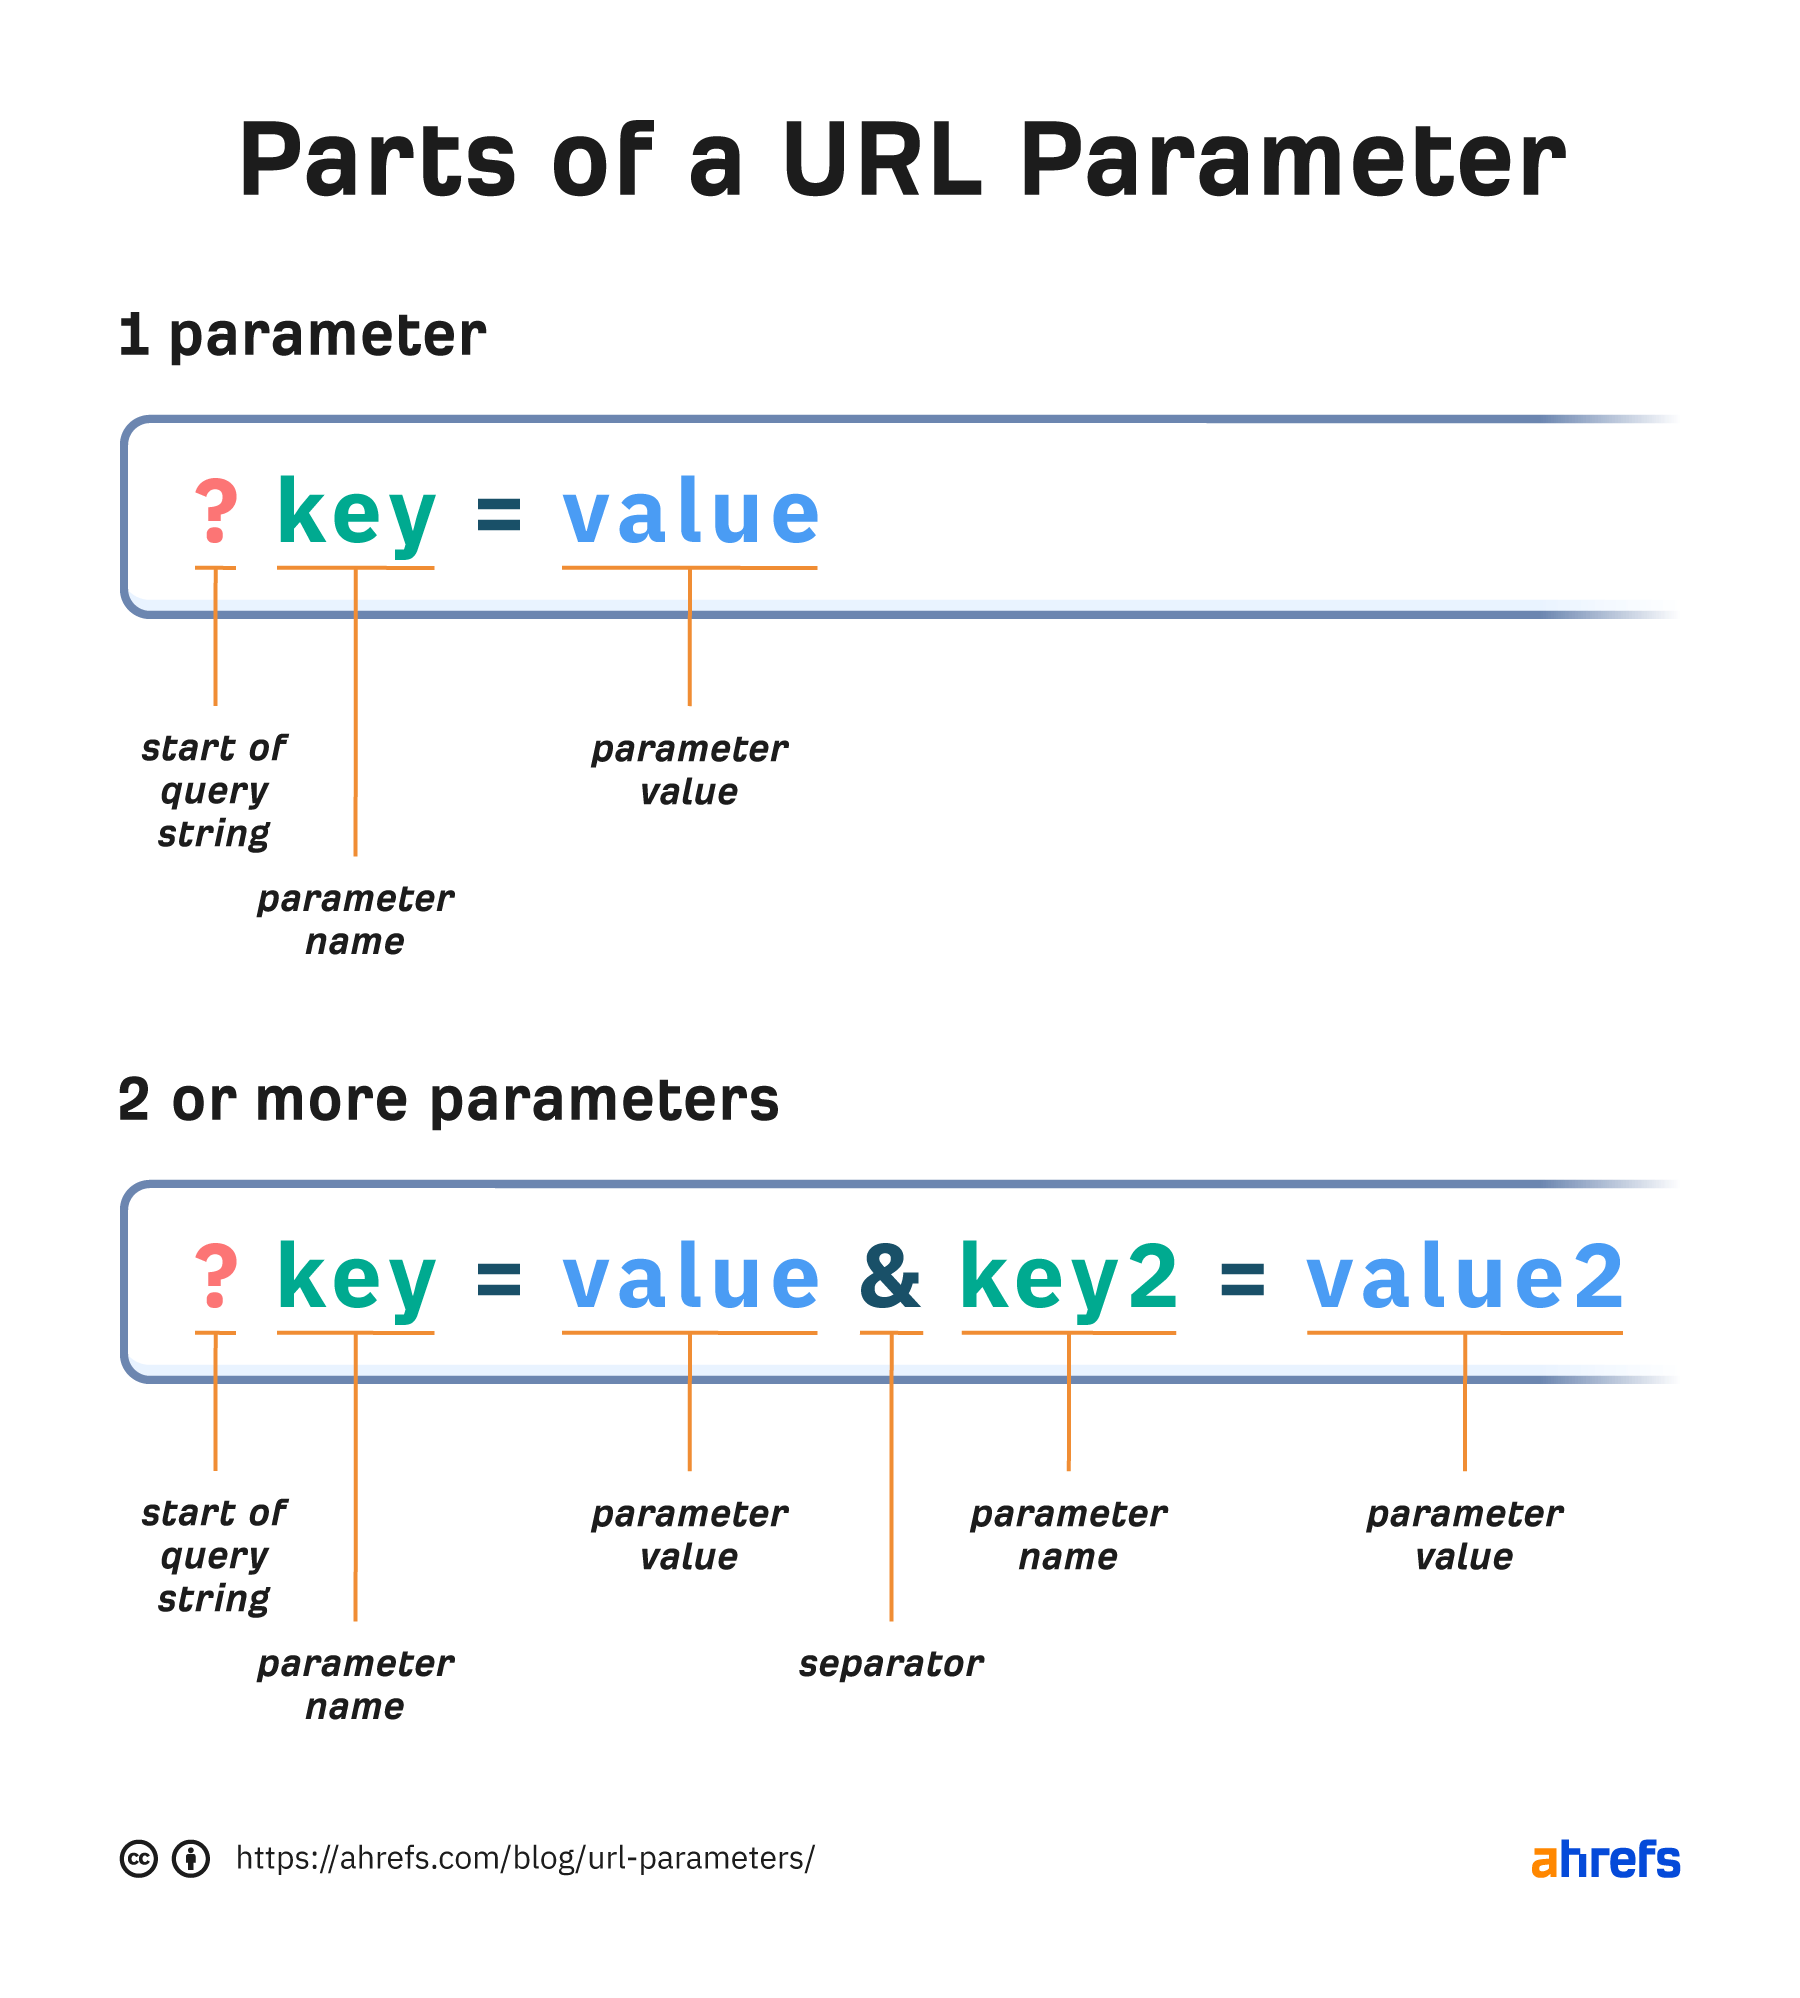 URL parametresinin bölümleri